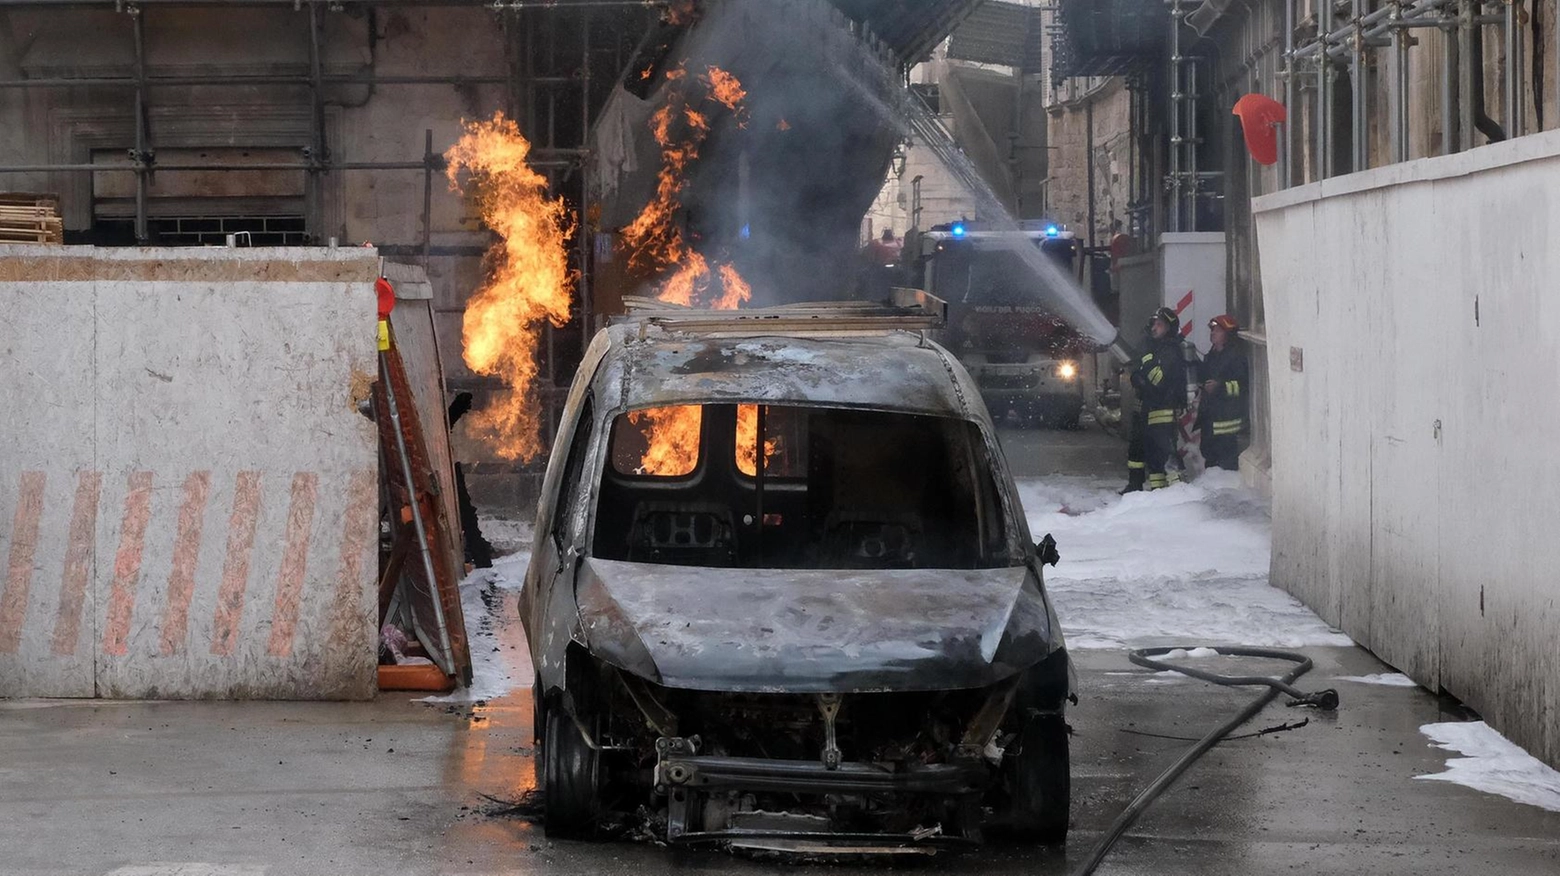 Tragedia sfiorata. L’auto prende fuoco nel cantiere in centro: "C’era una fuga di gas"